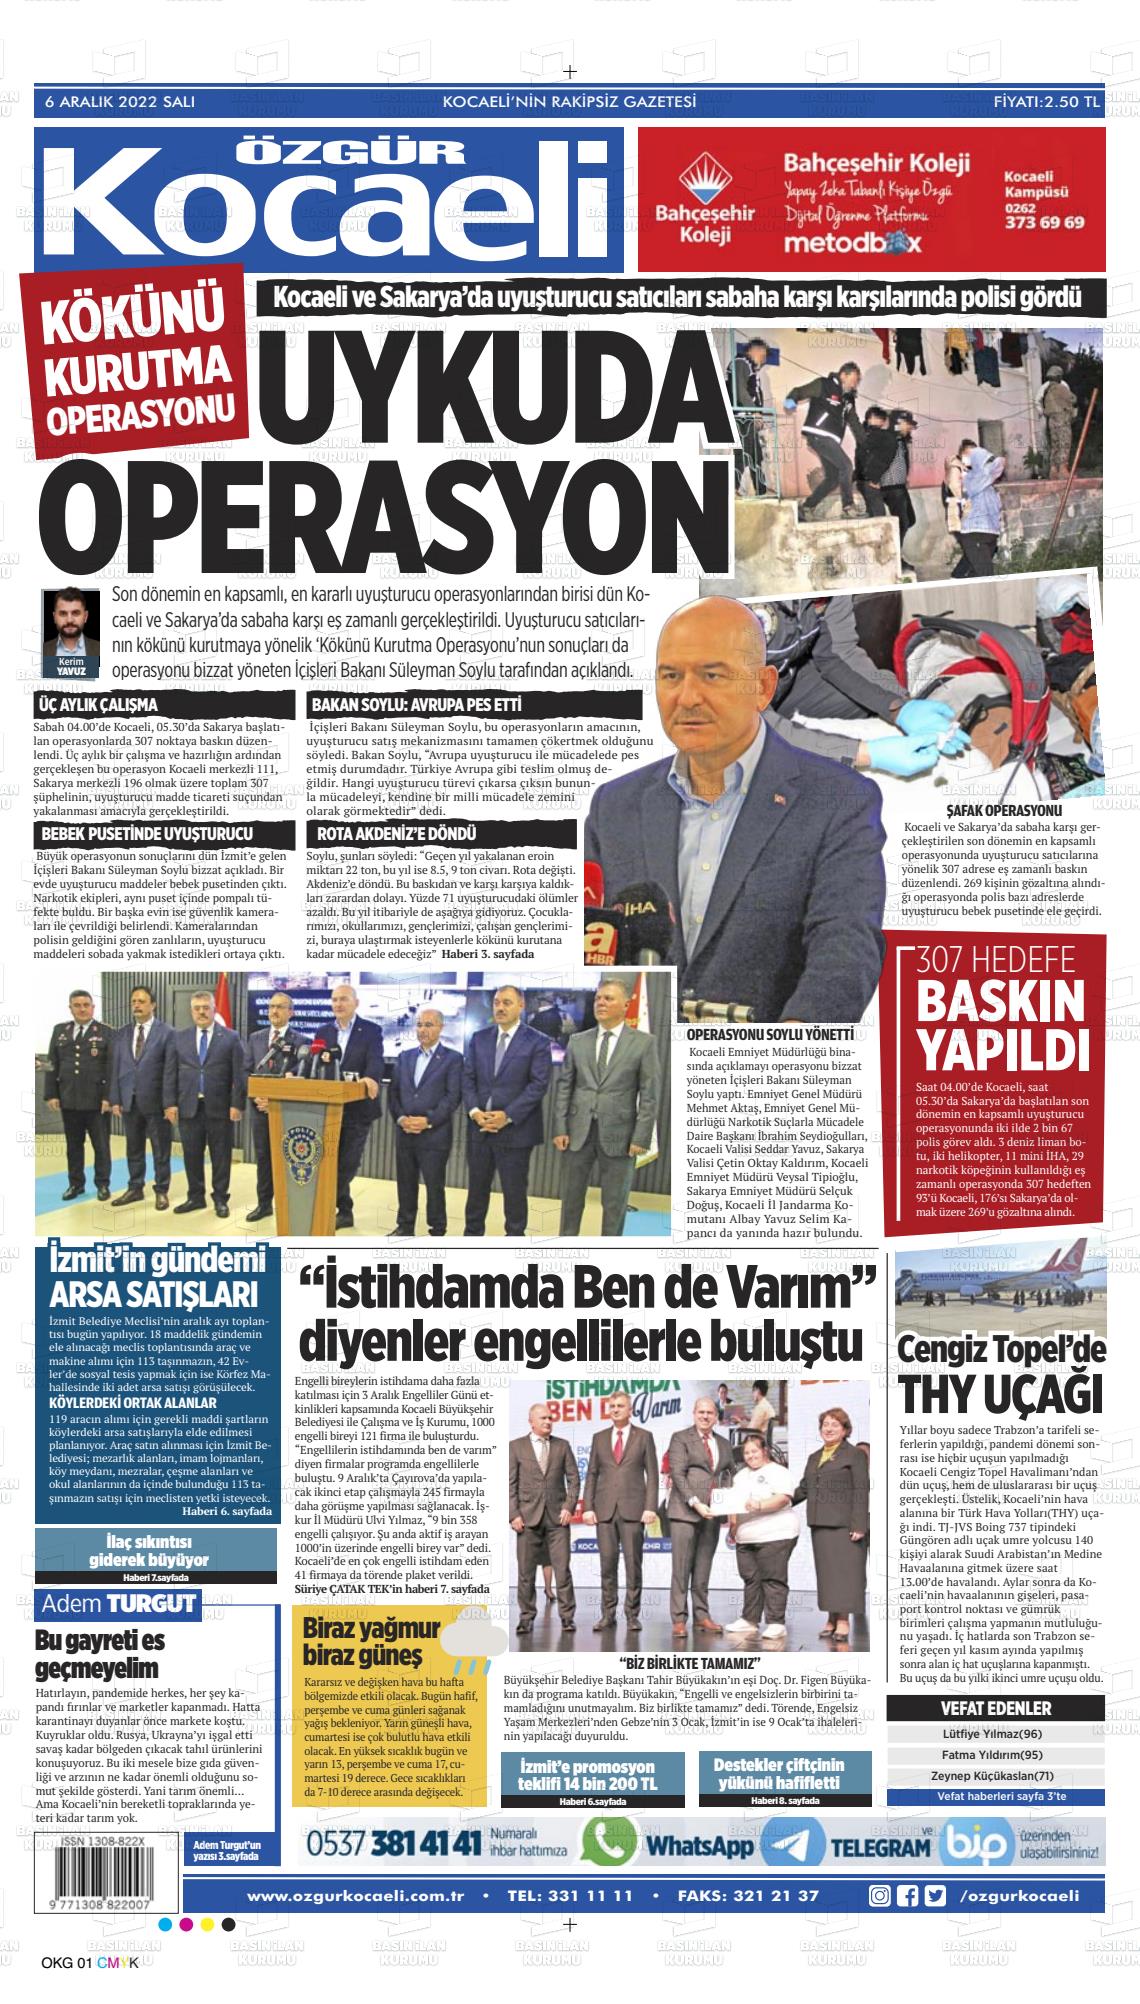 06 Aralık 2022 Özgür Kocaeli Gazete Manşeti